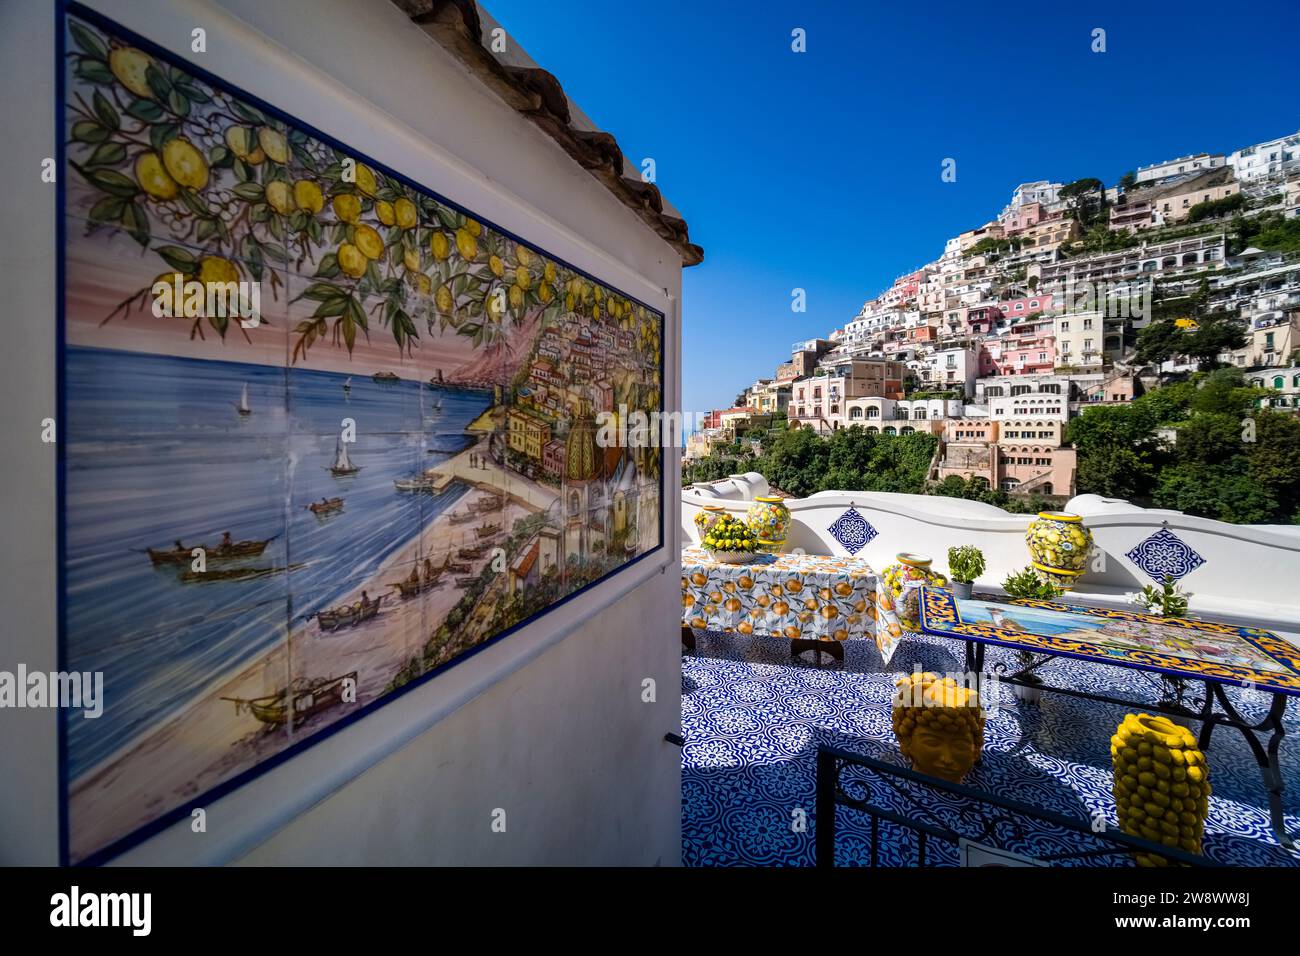 A Positano, sulla Costiera Amalfitana, si vendono colorate opere d'arte in ceramica, situata su una collina che domina il Mar Mediterraneo. Foto Stock